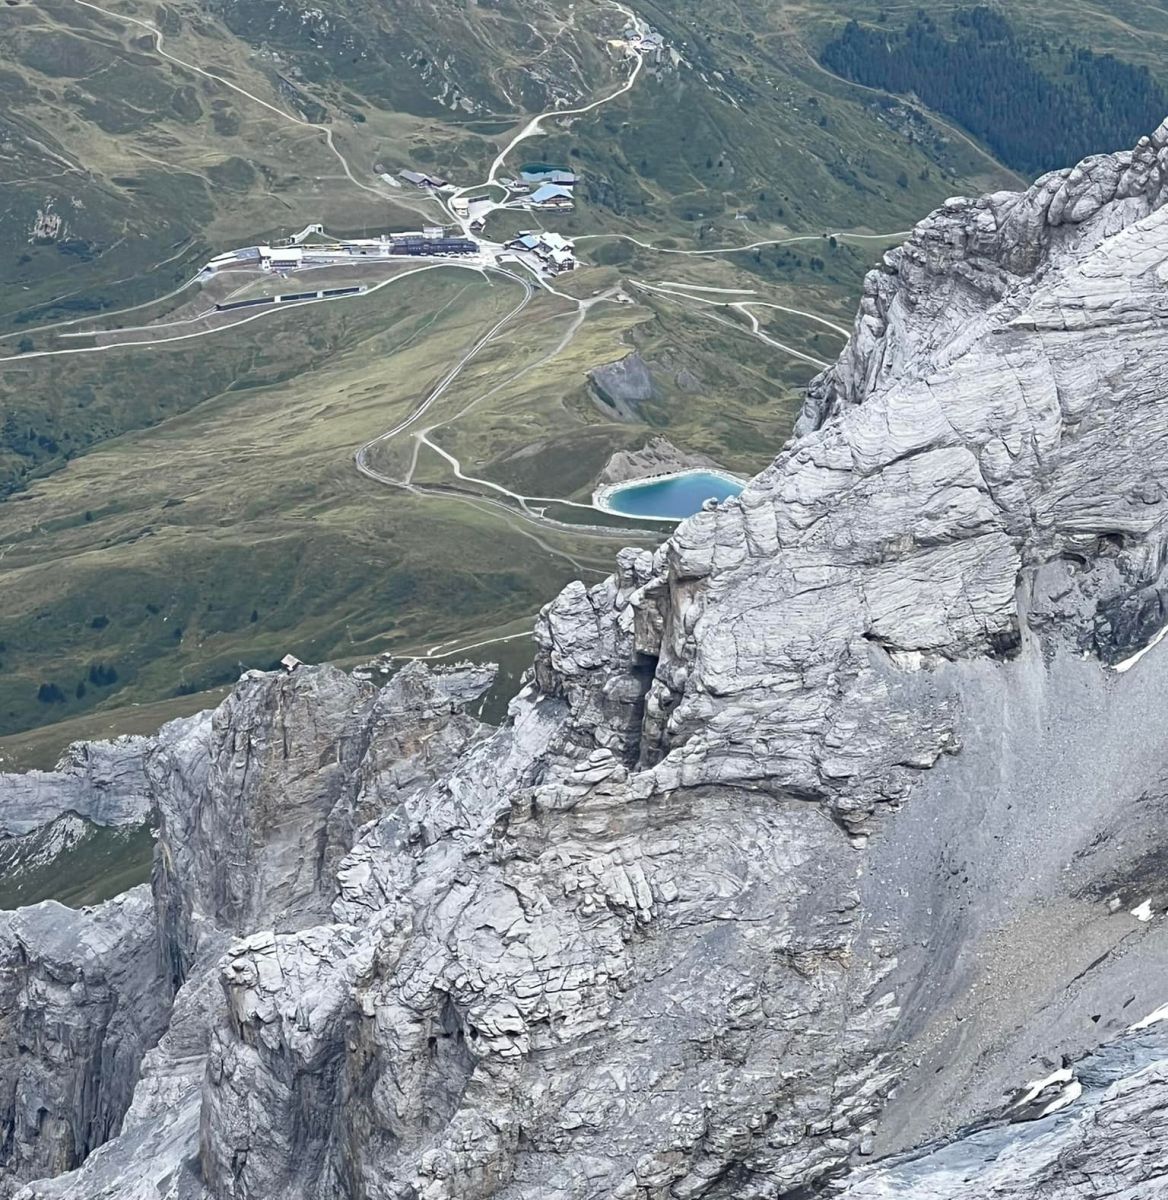 Kleine Schedegg from Jungfraujoch